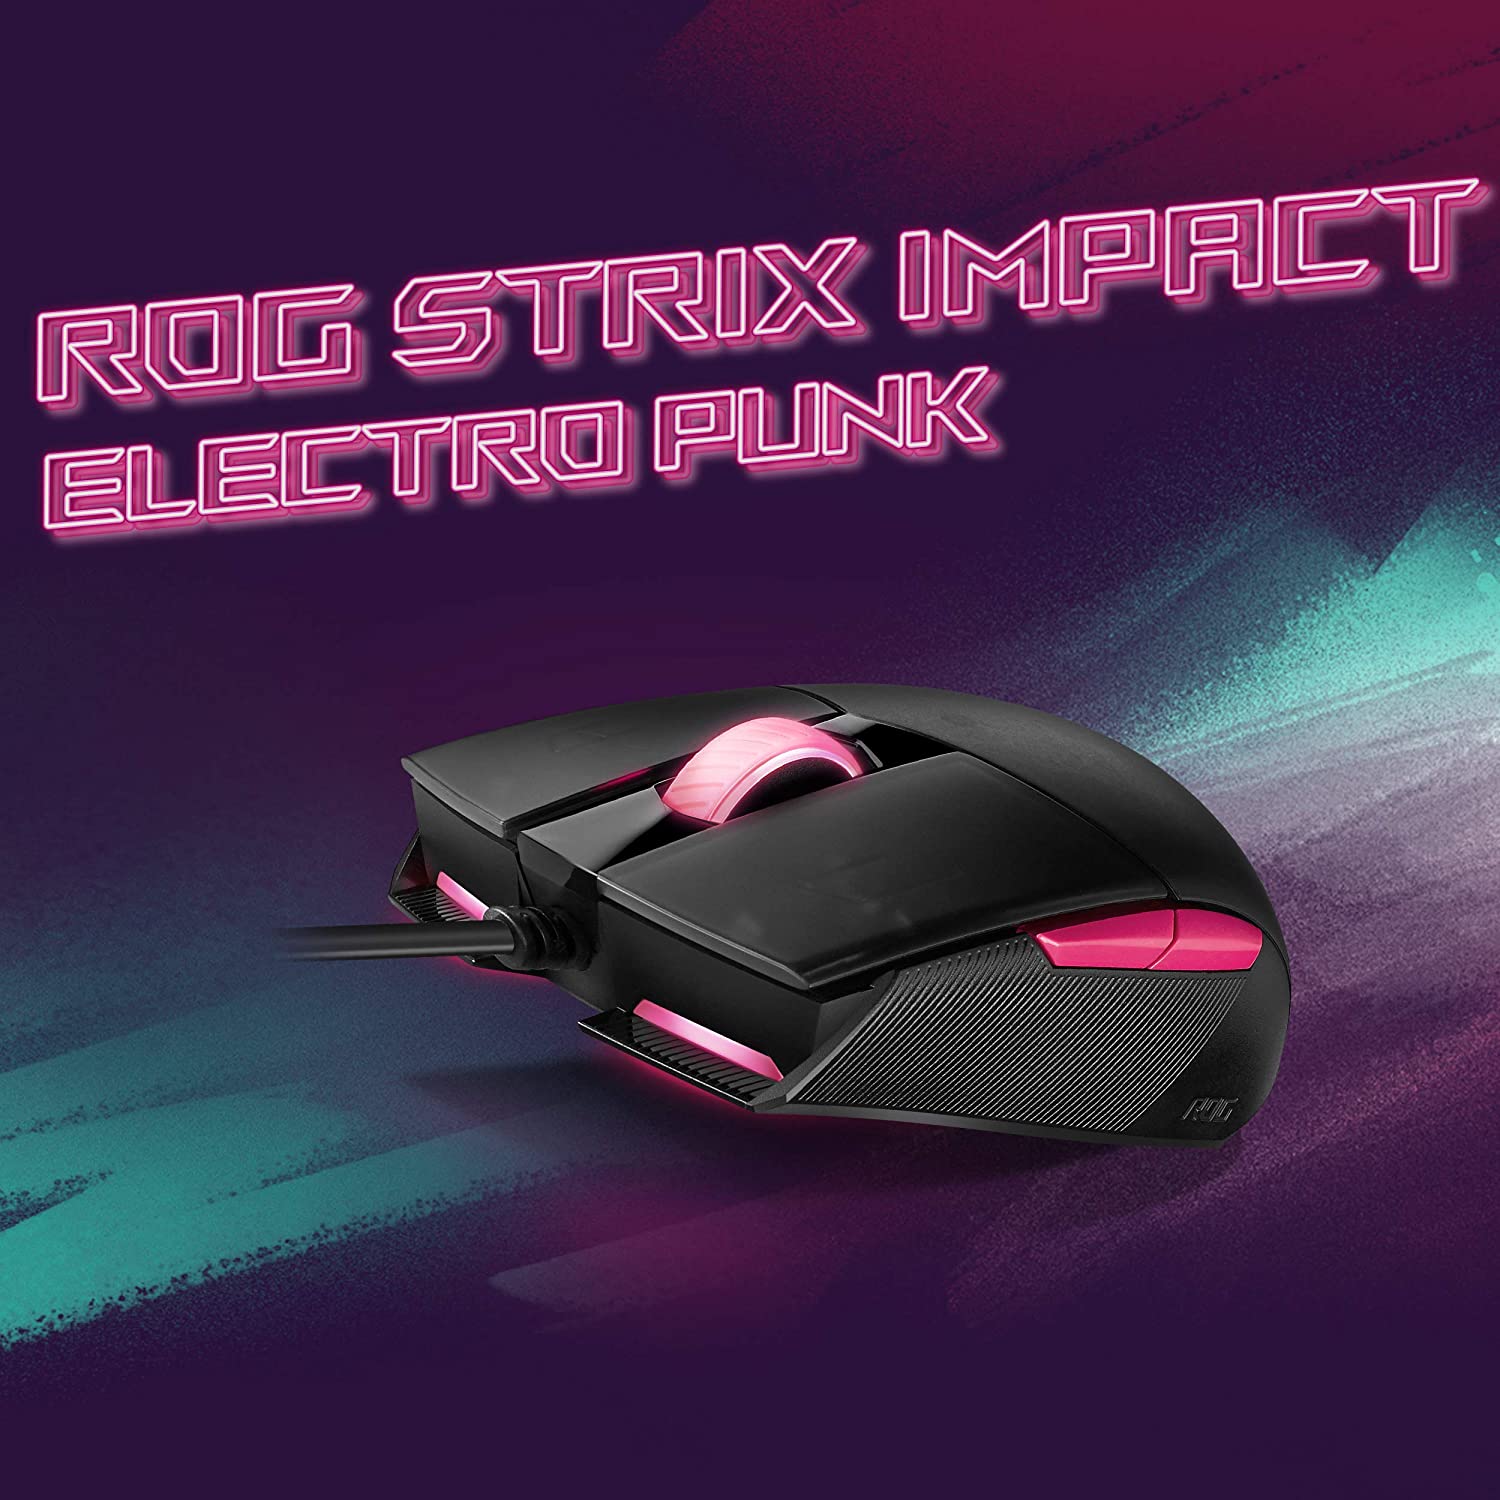 Souris de jeu - ASUS ROG Strix Impact II Electro Punk (5 boutons programmables, éclairage RVB, léger et ergonomique)